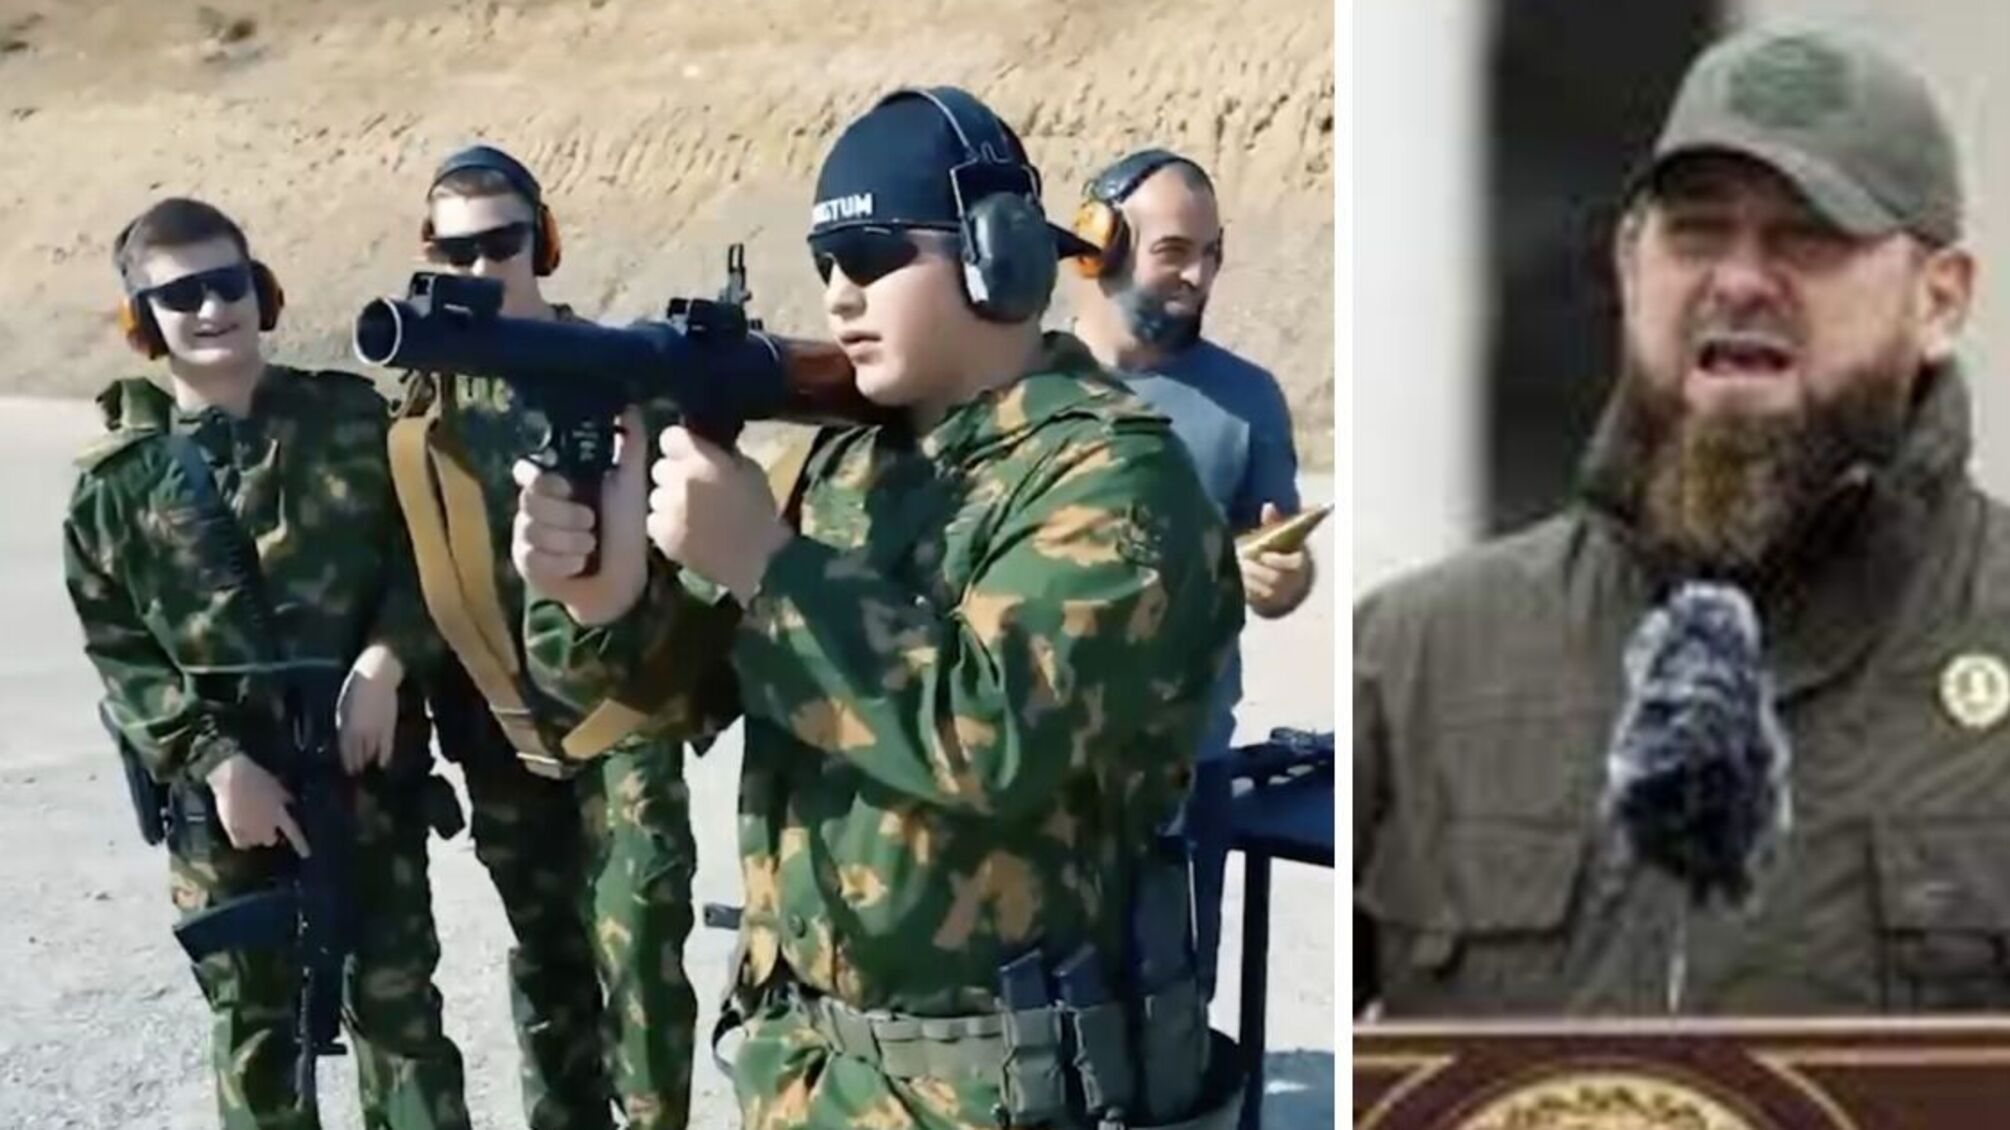 Не хватает 'победного' контента: Кадыров заявил, что отправляет своих троих несовершеннолетних сыновей на войну